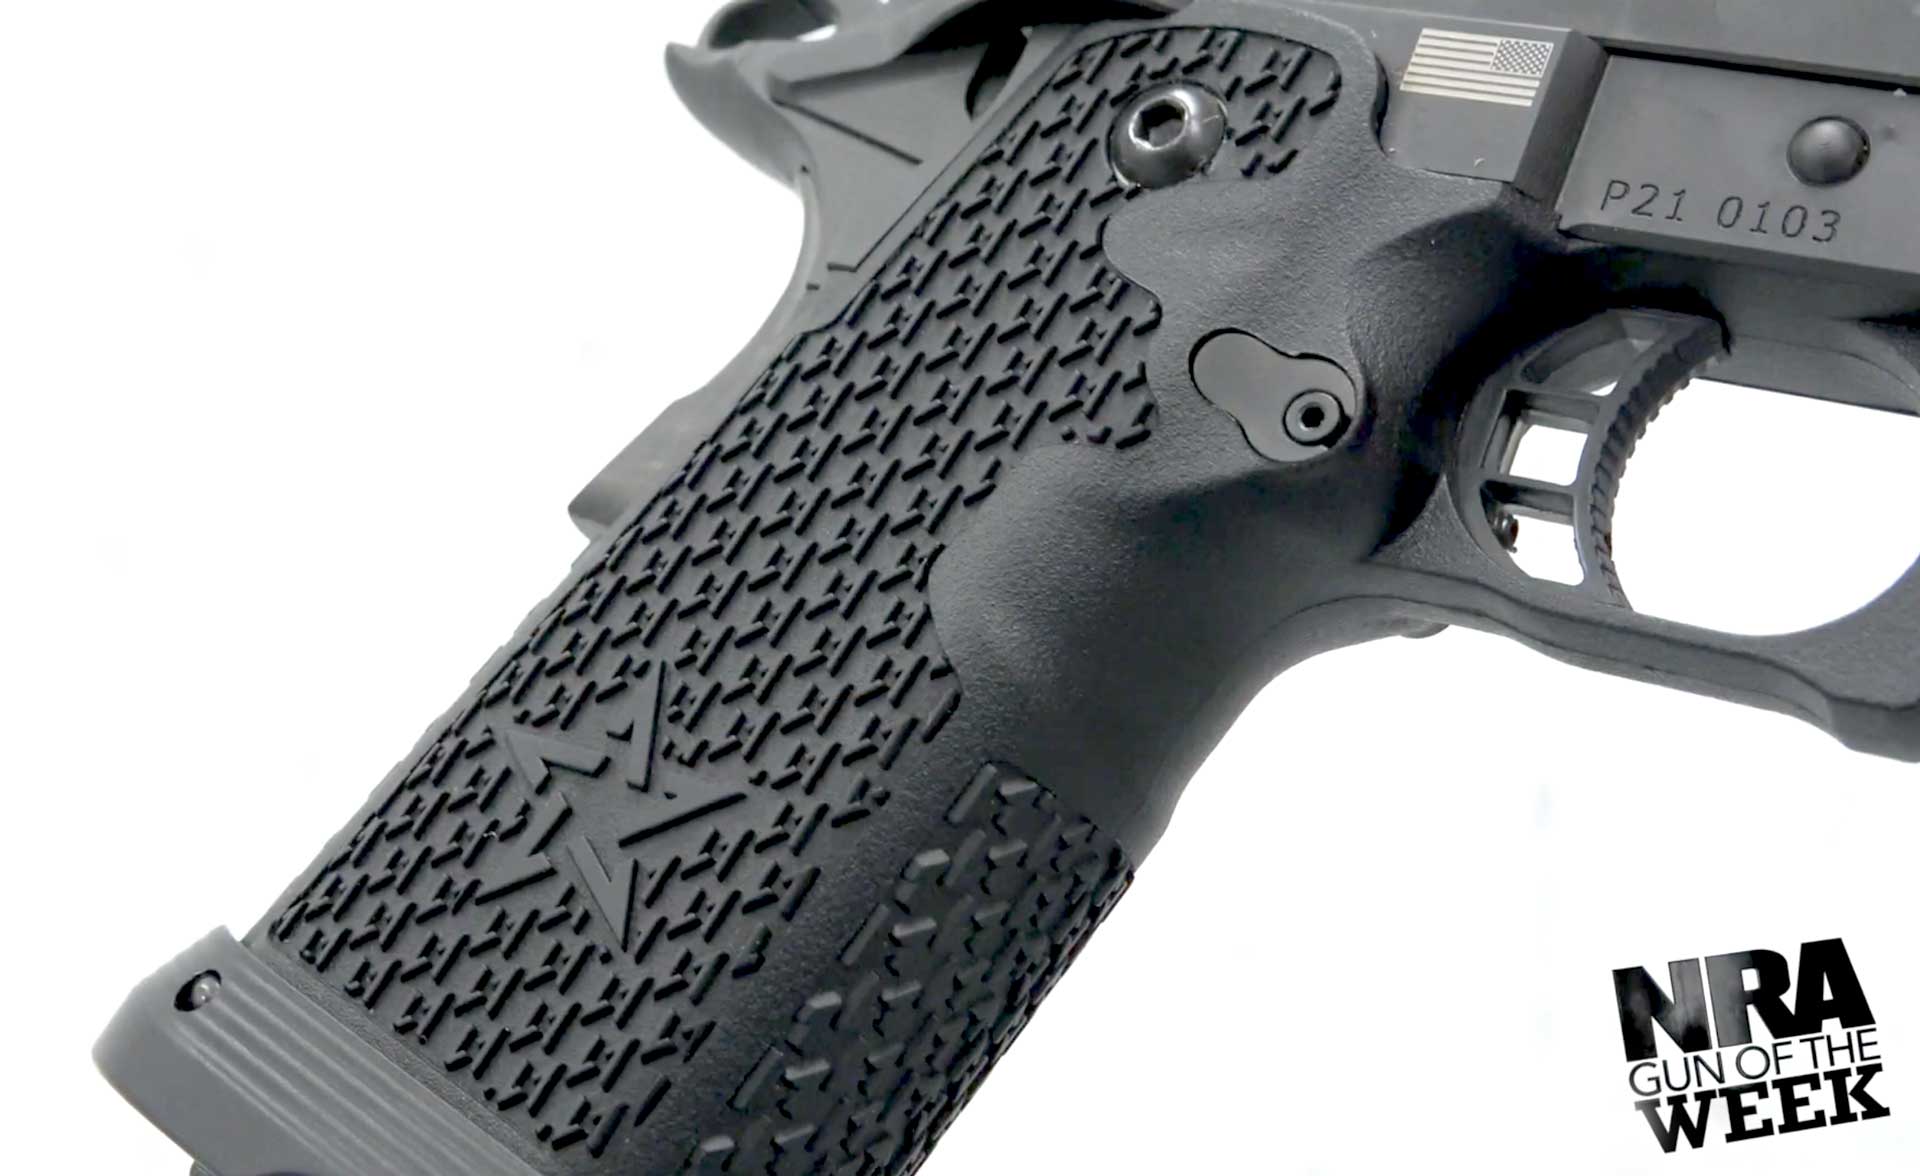 plastic grip gun pistol texturing abrasive text on image noting "nra gun of the week"